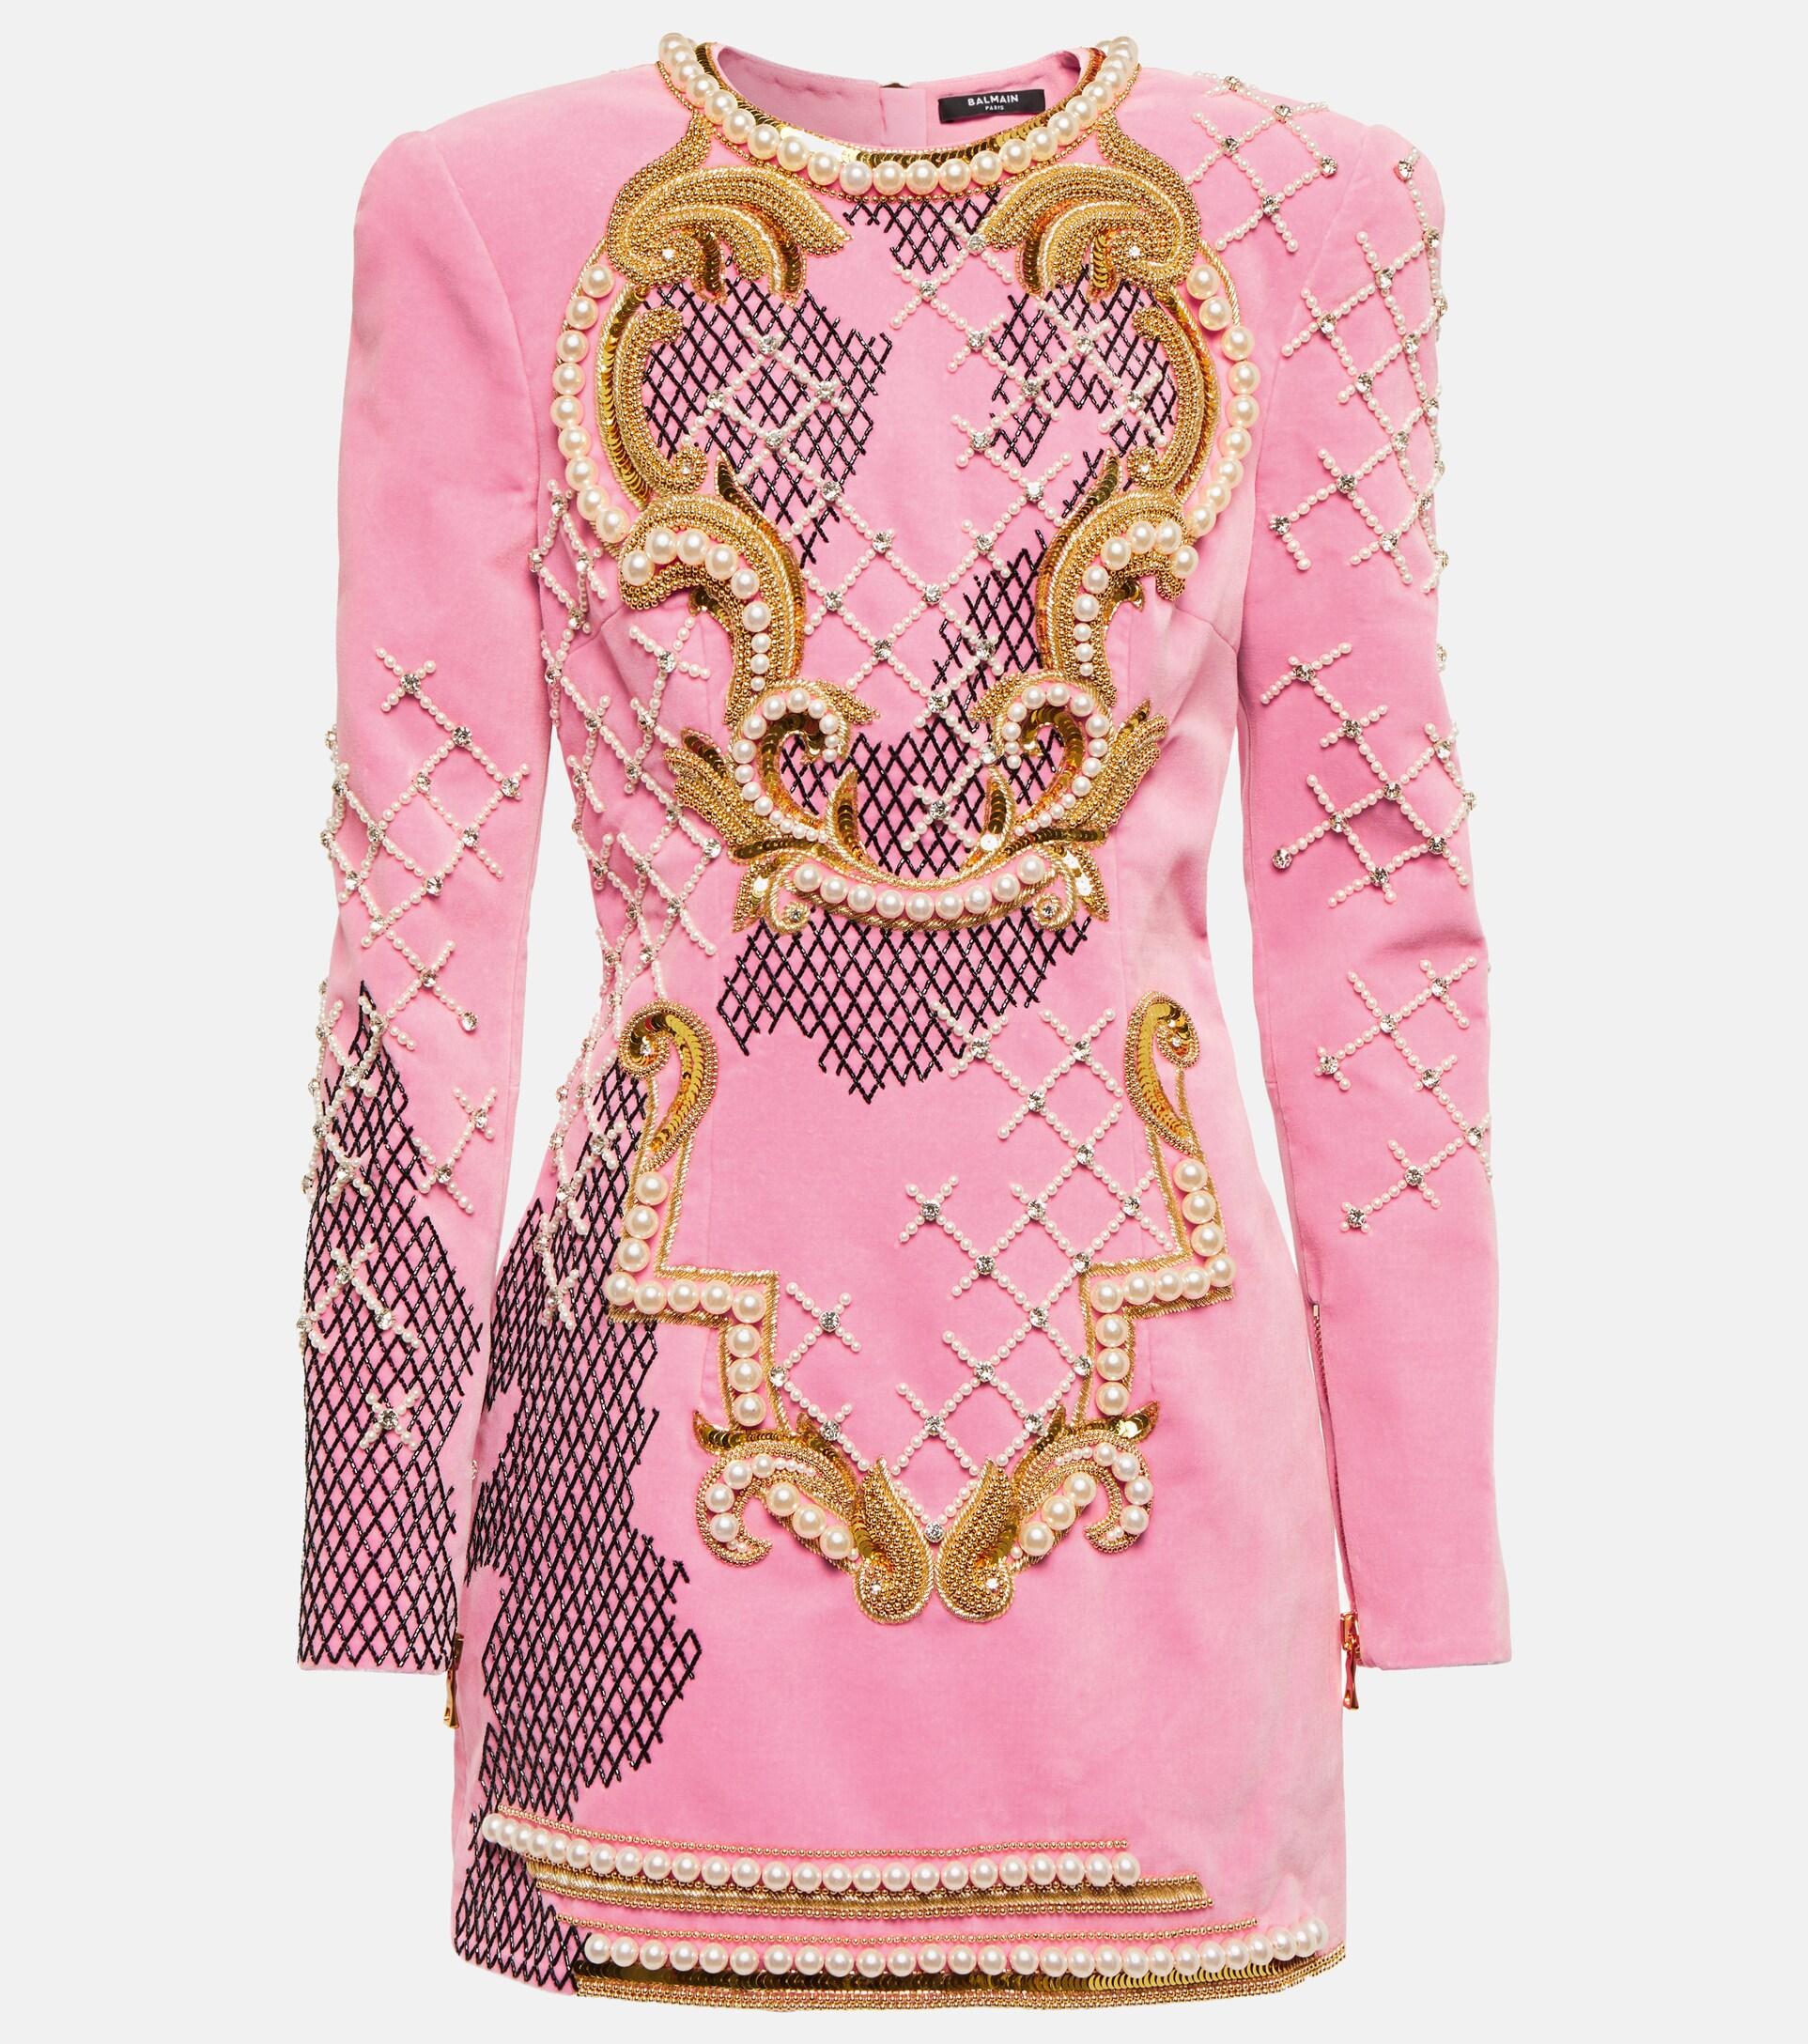 Rusten rod bille Balmain Embellished Velvet Minidress in Pink | Lyst